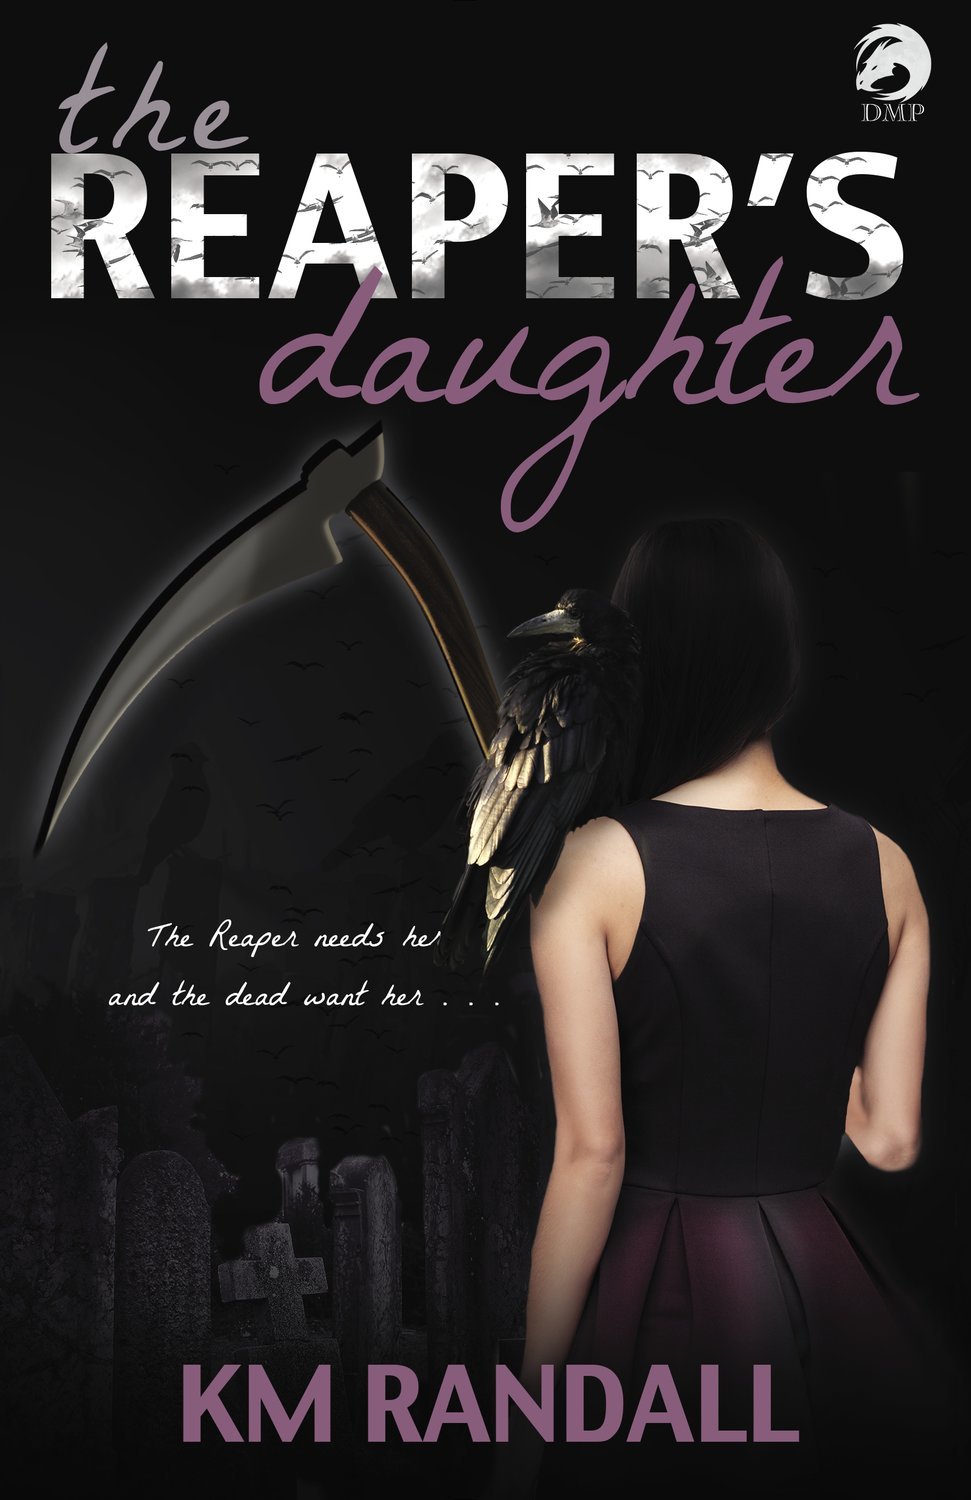 Reaper's Daughter